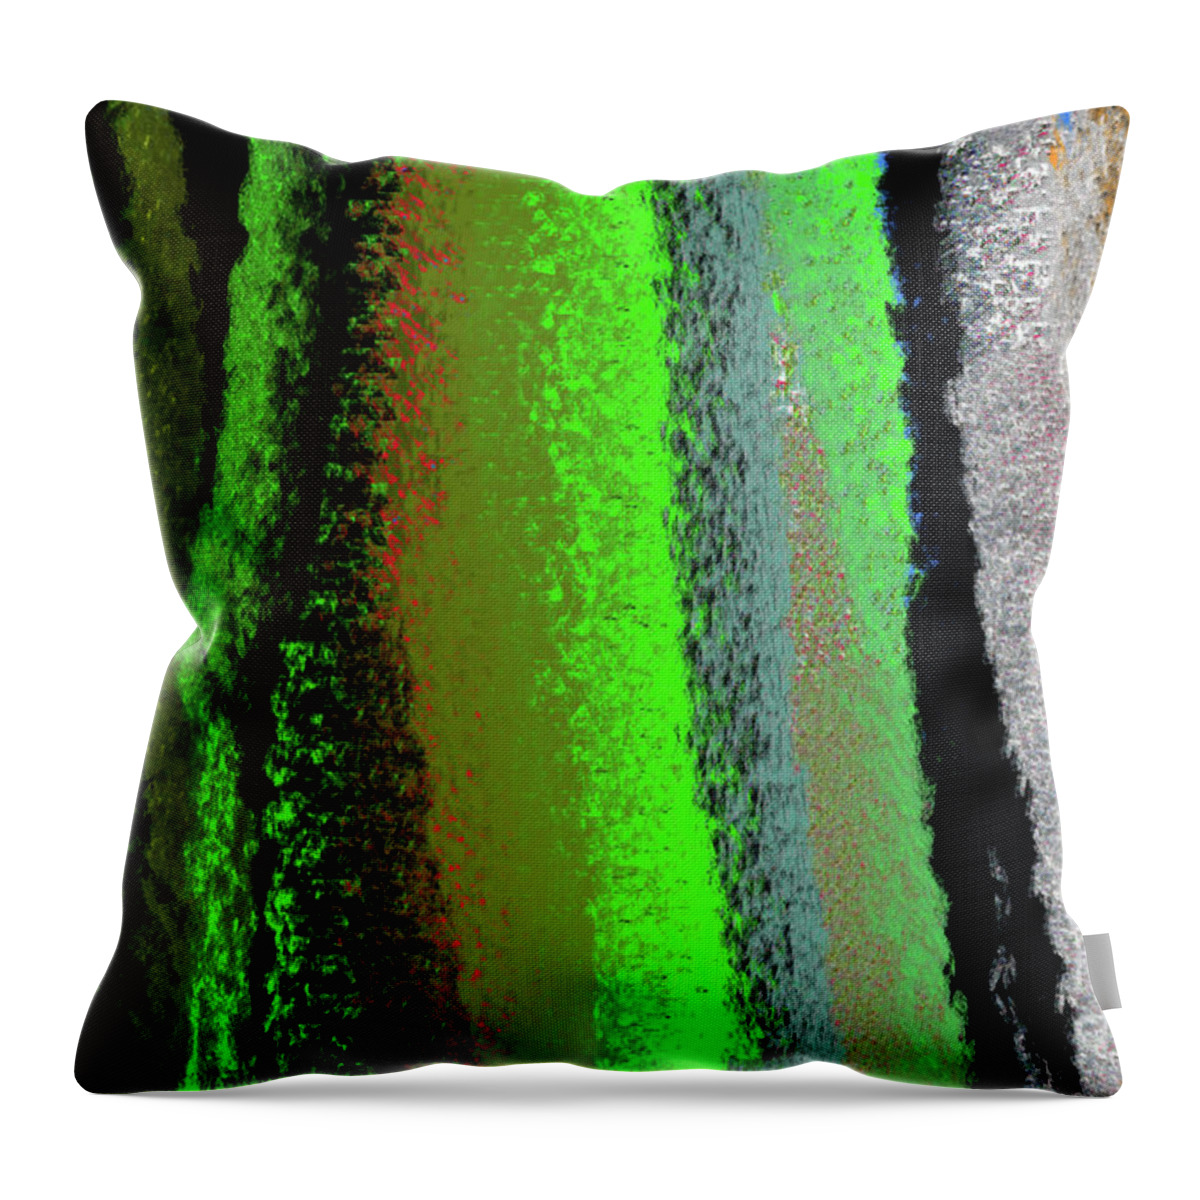  Throw Pillow featuring the digital art 12-1-2022z by Walter Paul Bebirian